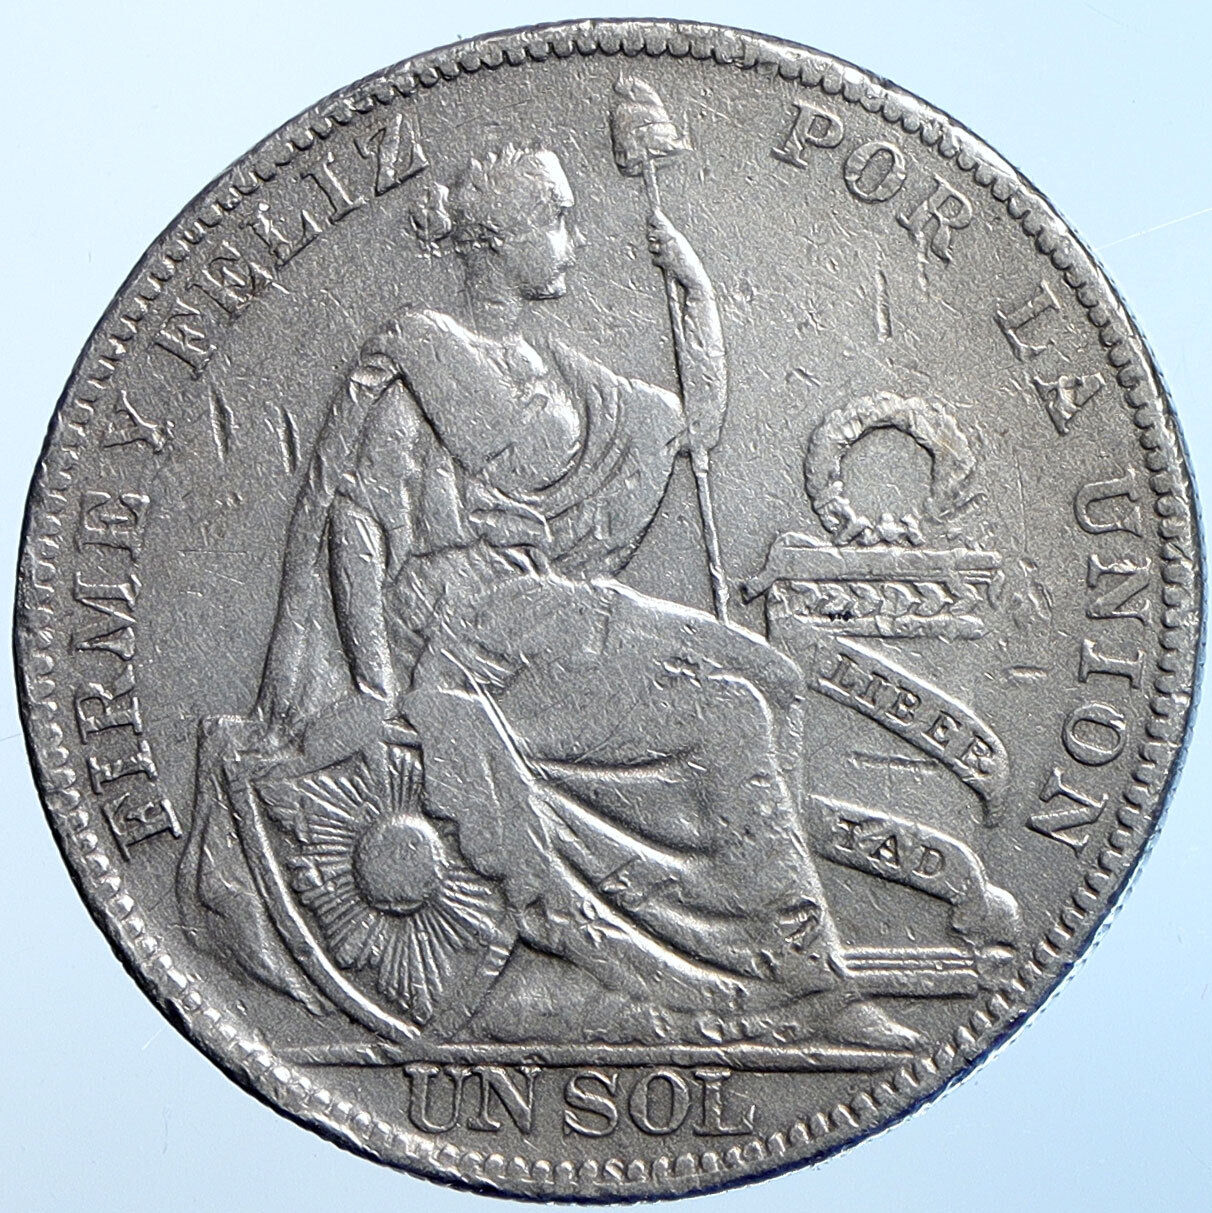 1930 PERU South America 1 SOL Antique BIG Original Silver Peruvian Coin i114661